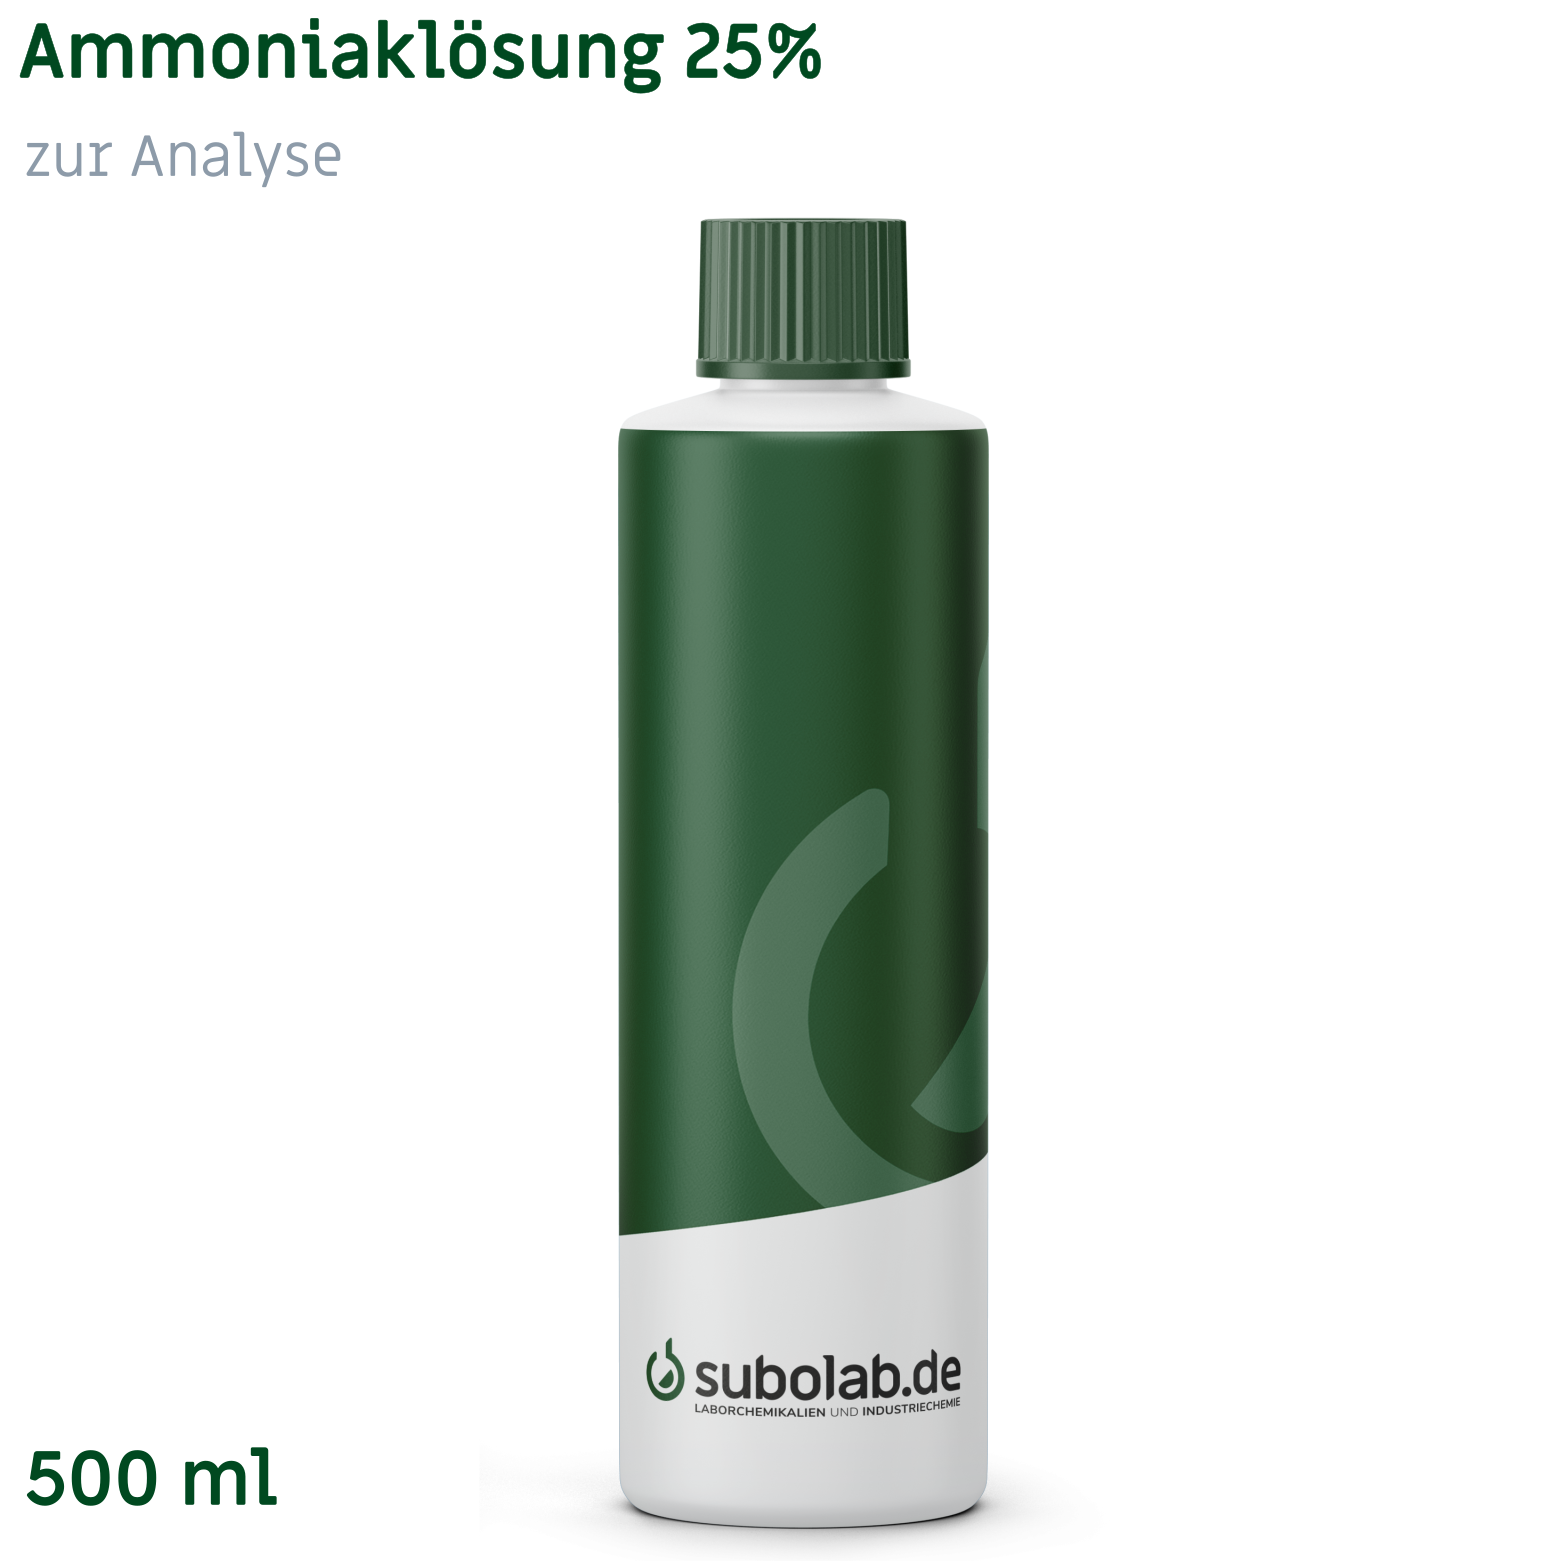 Bild von Ammoniaklösung 25% zur Analyse (500 ml)